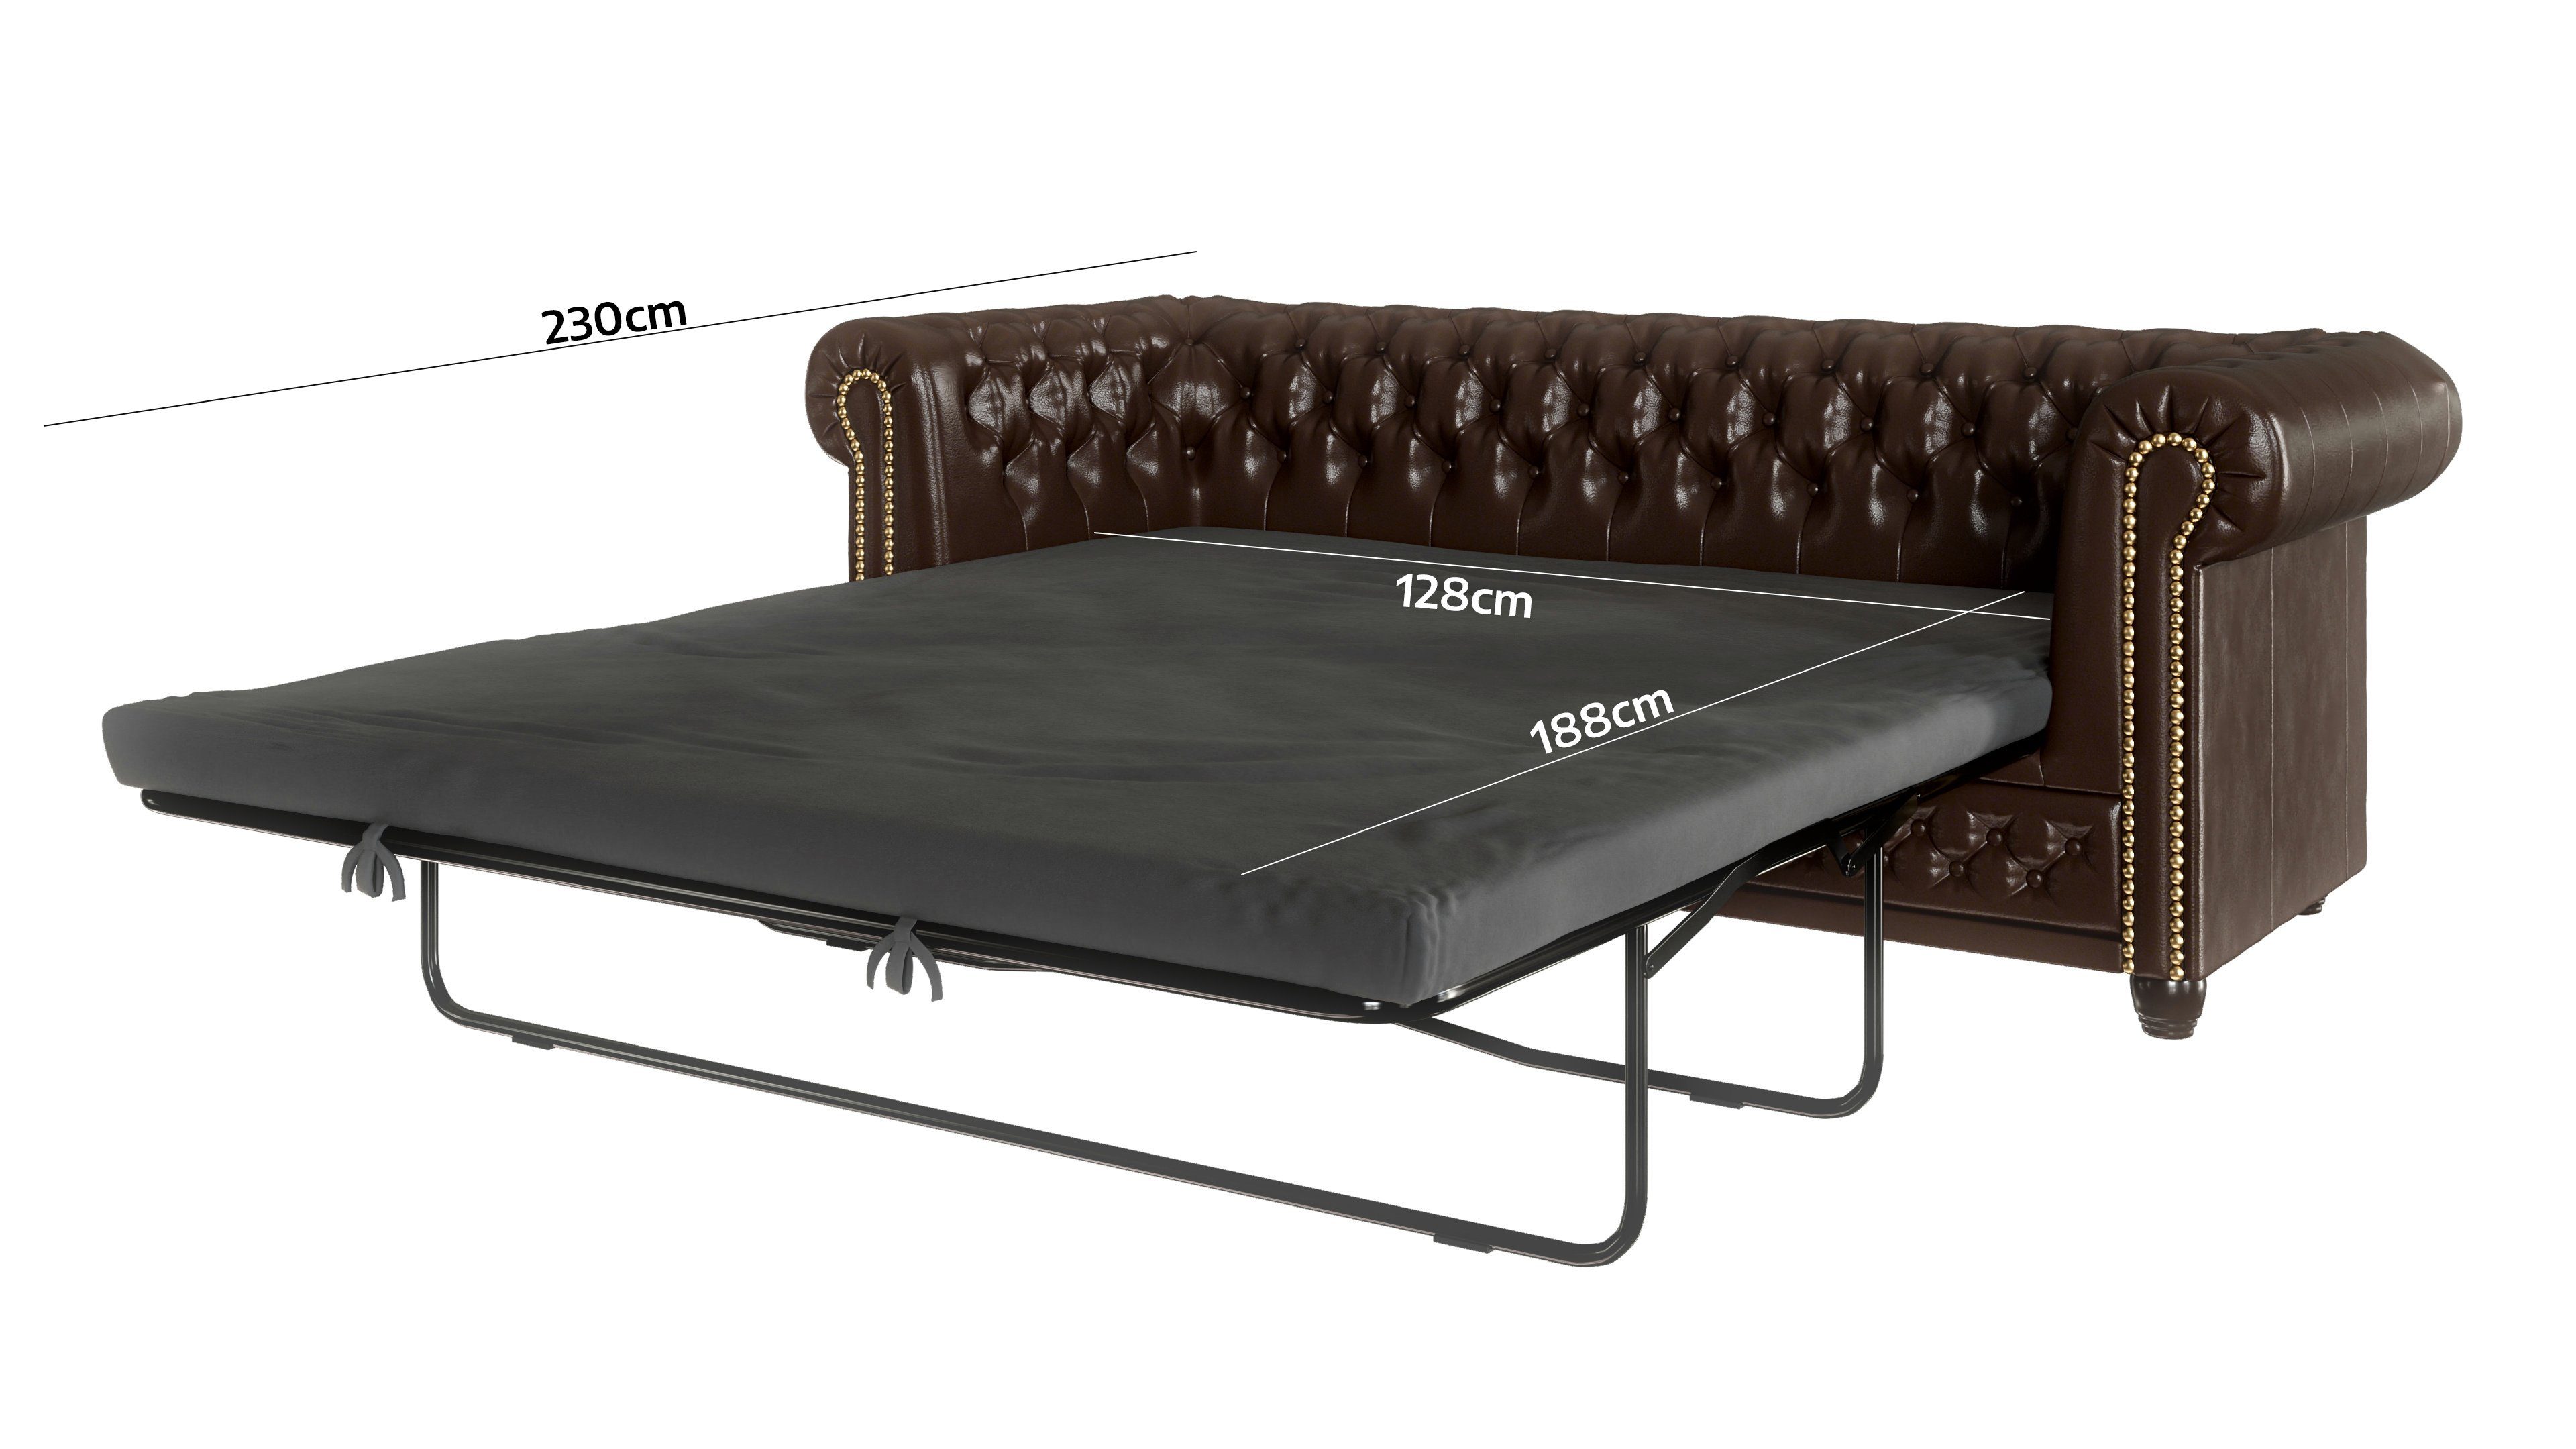 Braun 72cm, Bettfunktion, Chesterfield-Sofa mit H 203cm 86cm Möbel B x T mit Jeff, S-Style x 3-Sitzer, Wellenfederung